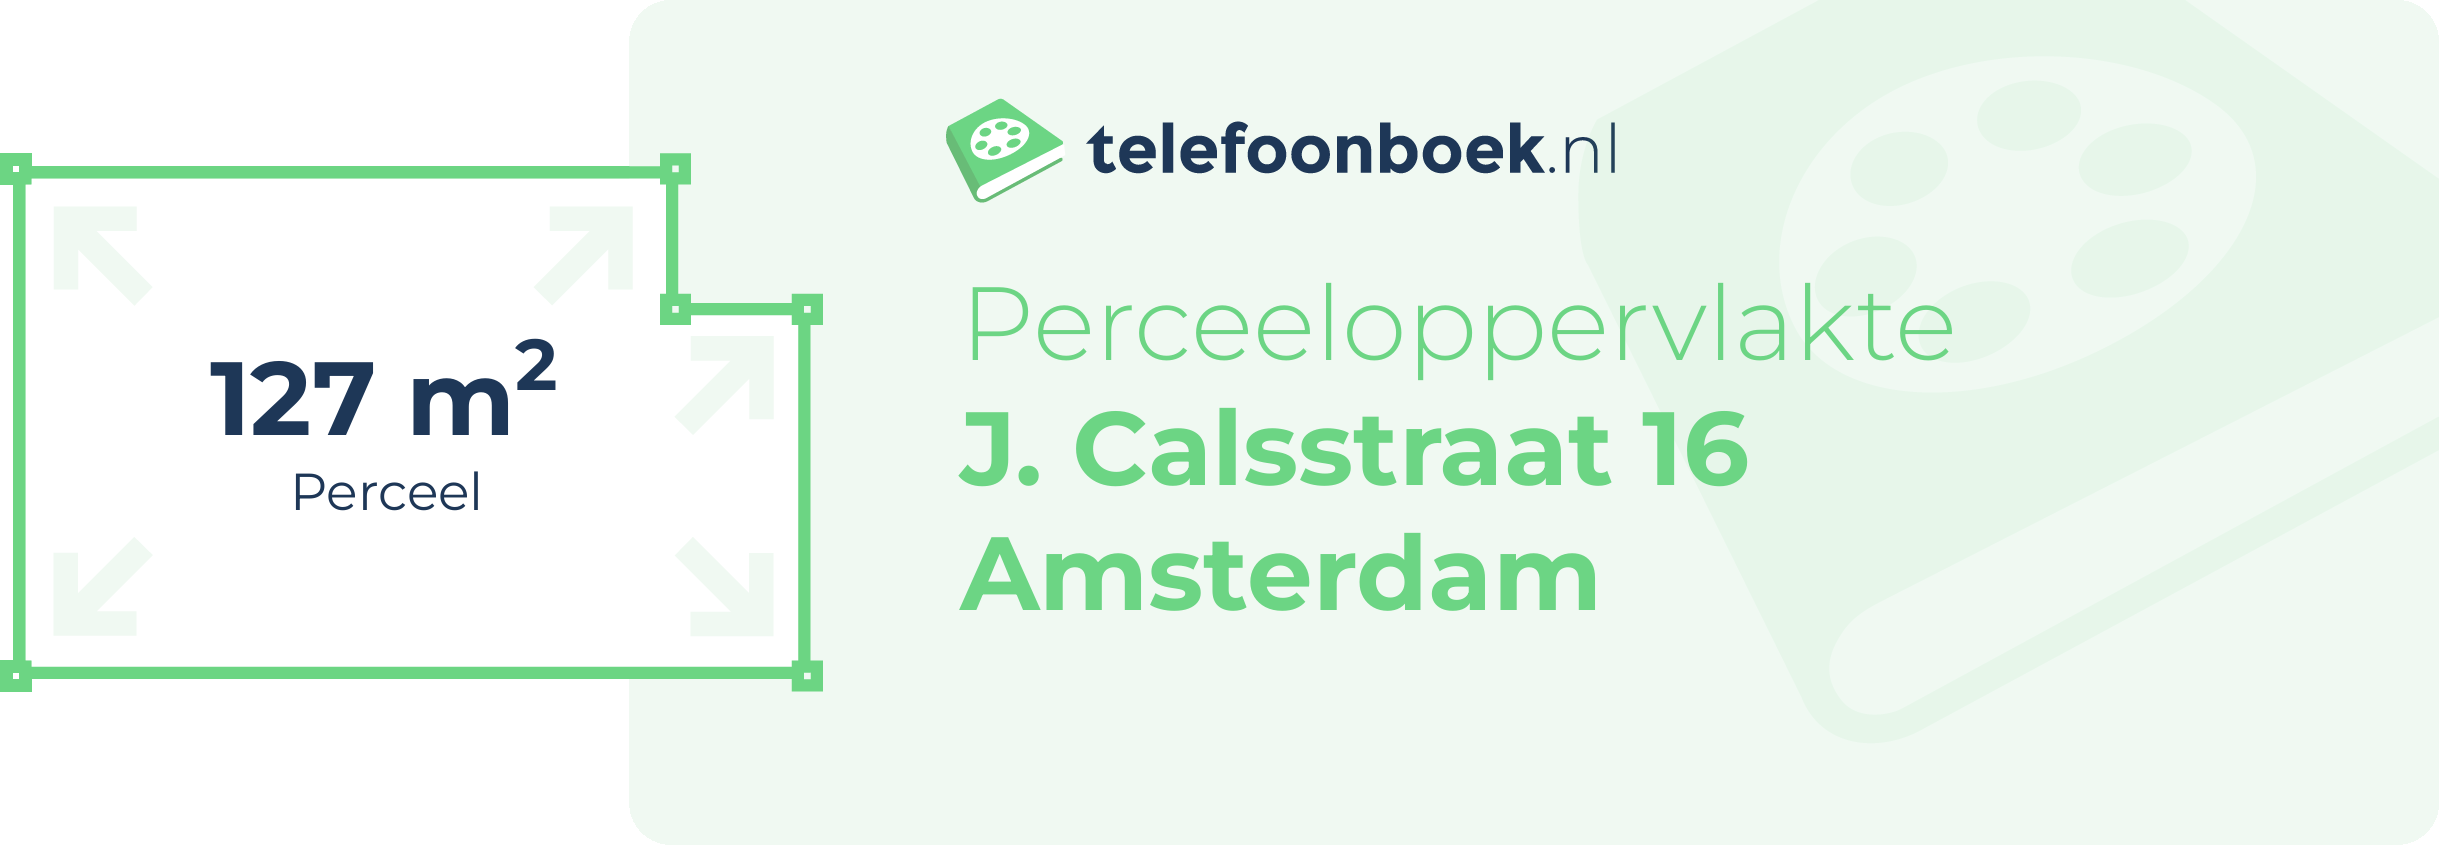 Perceeloppervlakte J. Calsstraat 16 Amsterdam